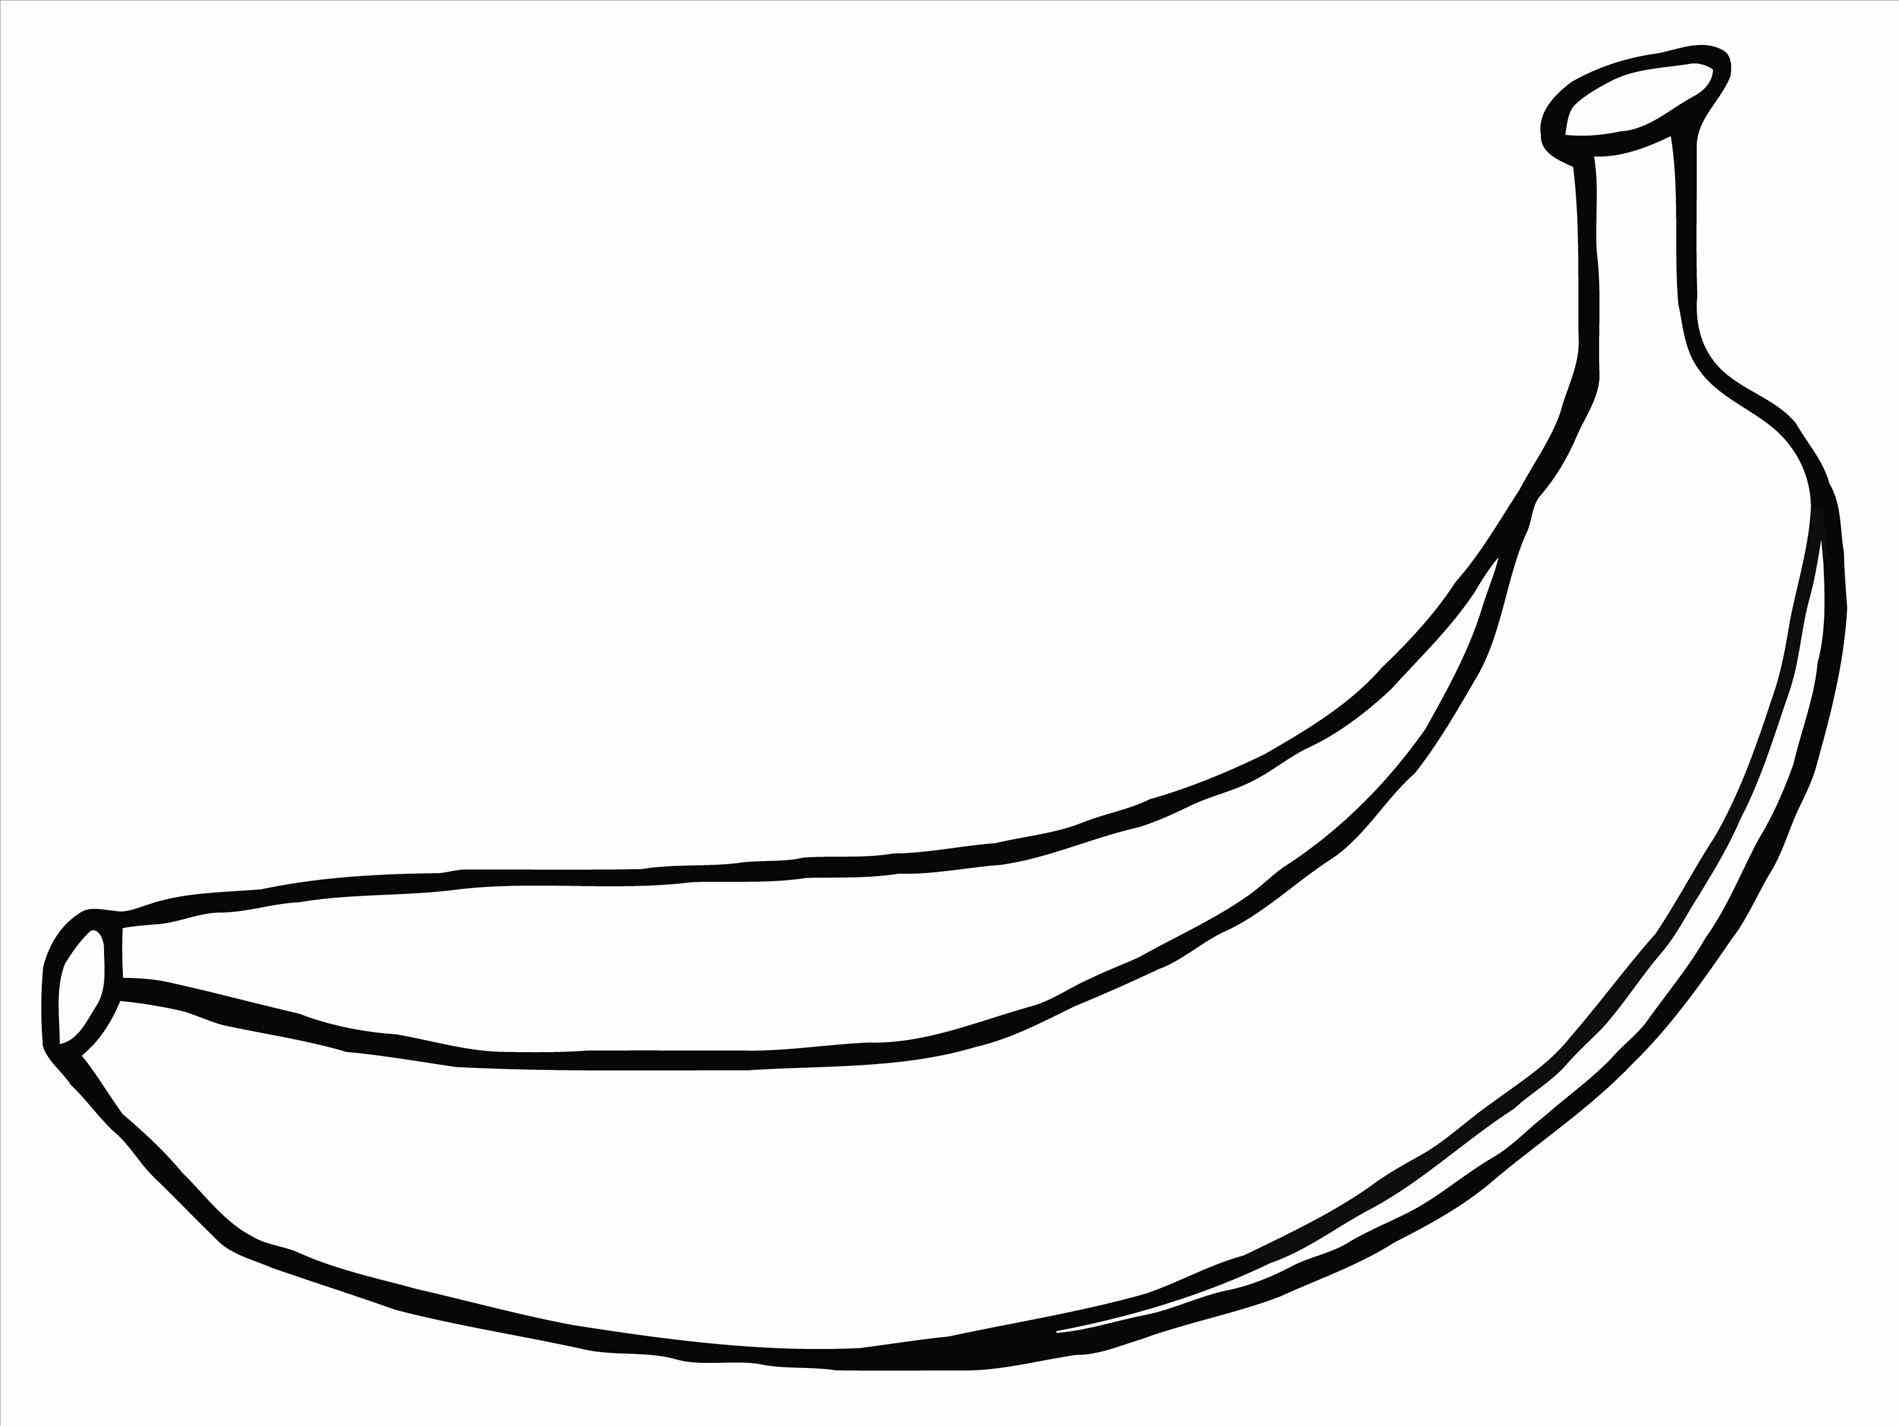 Banana Cartoon Drawing at GetDrawings Free download